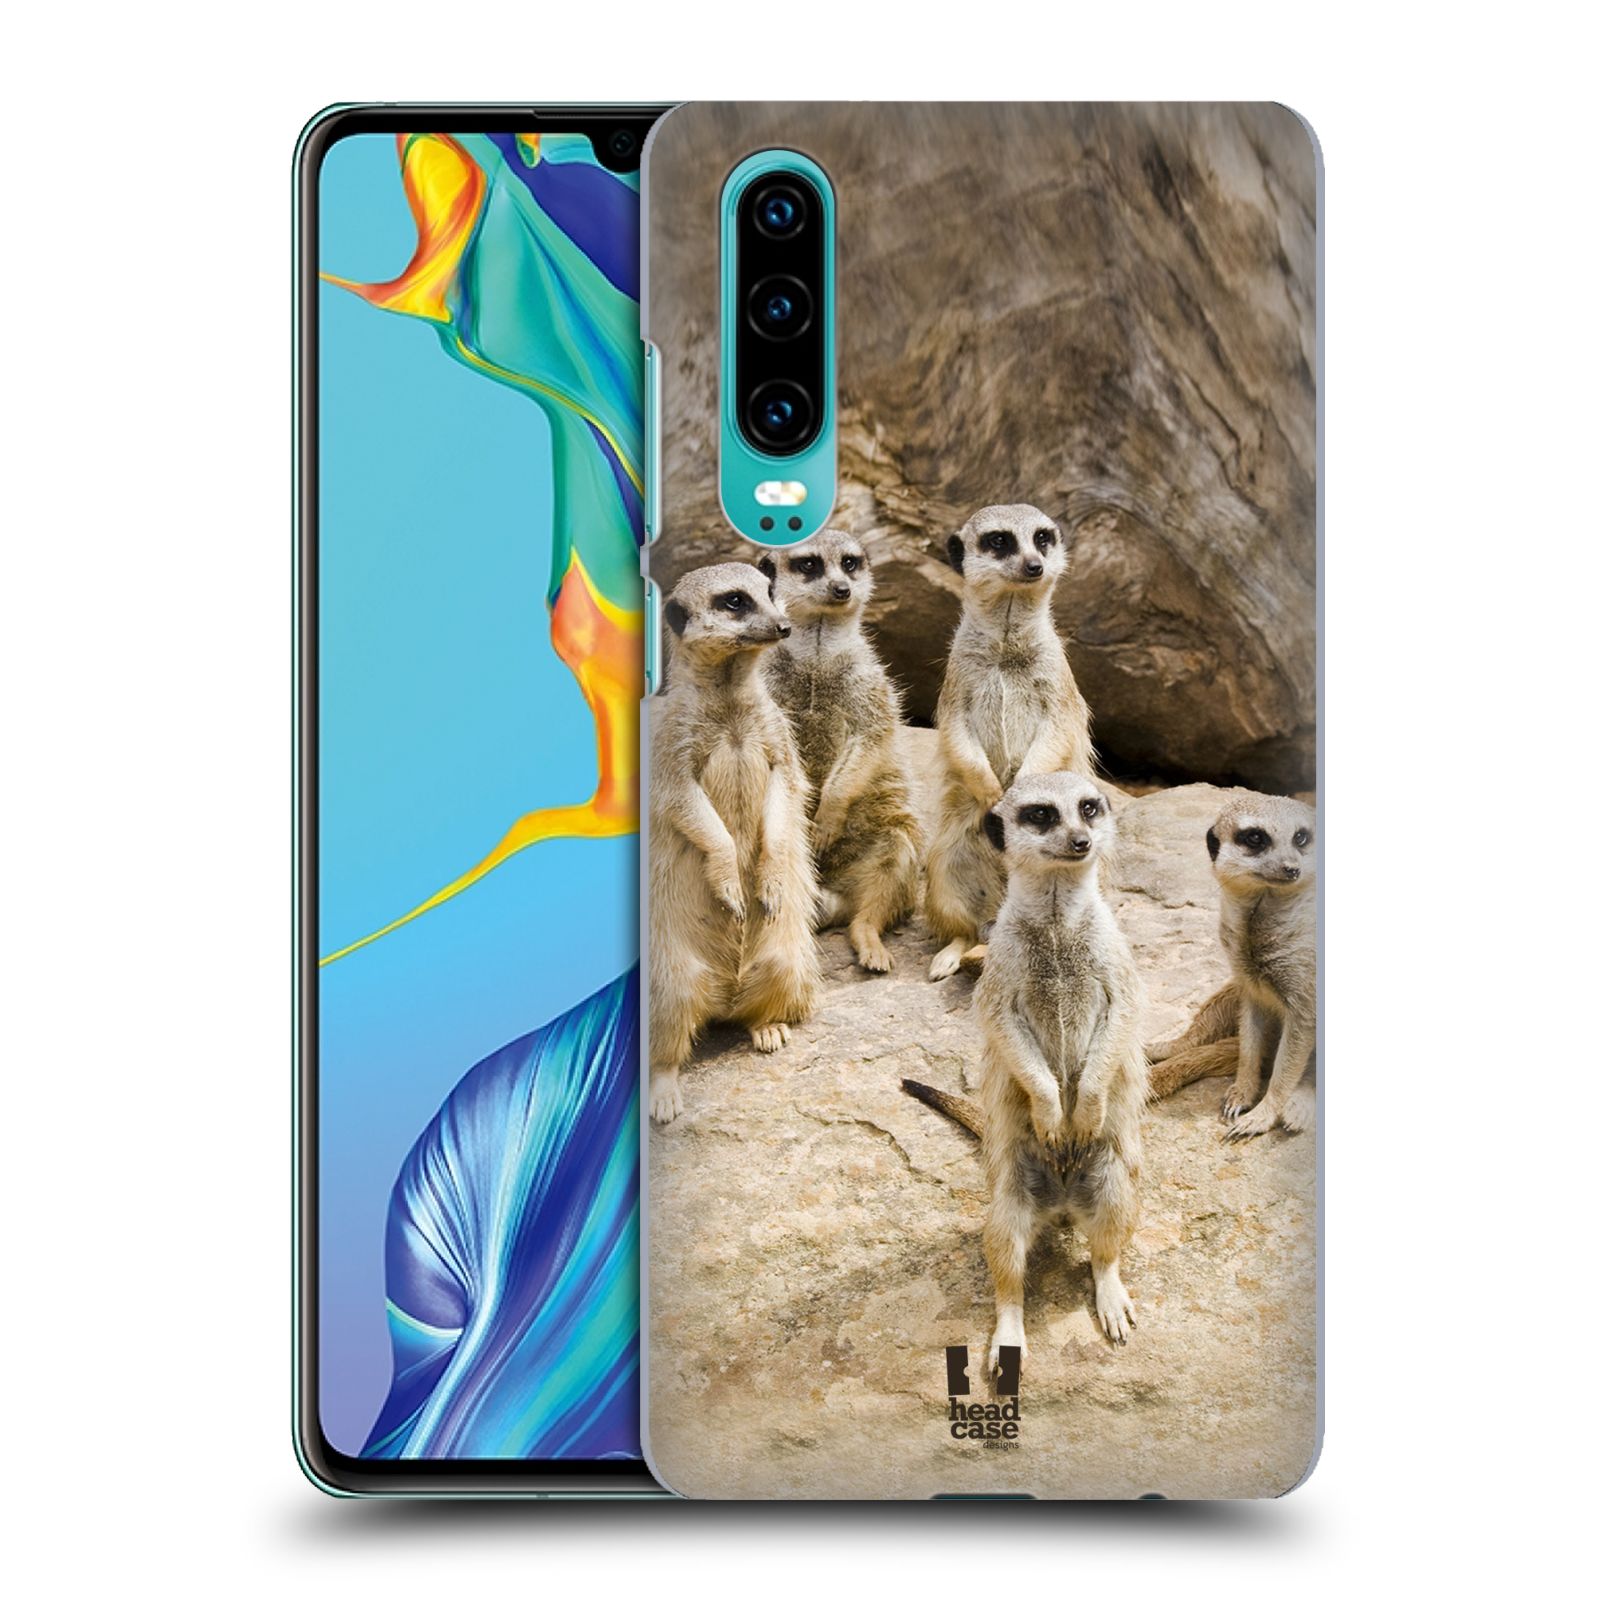 Zadní obal pro mobil Huawei P30 - HEAD CASE - Svět zvířat roztomilé surikaty